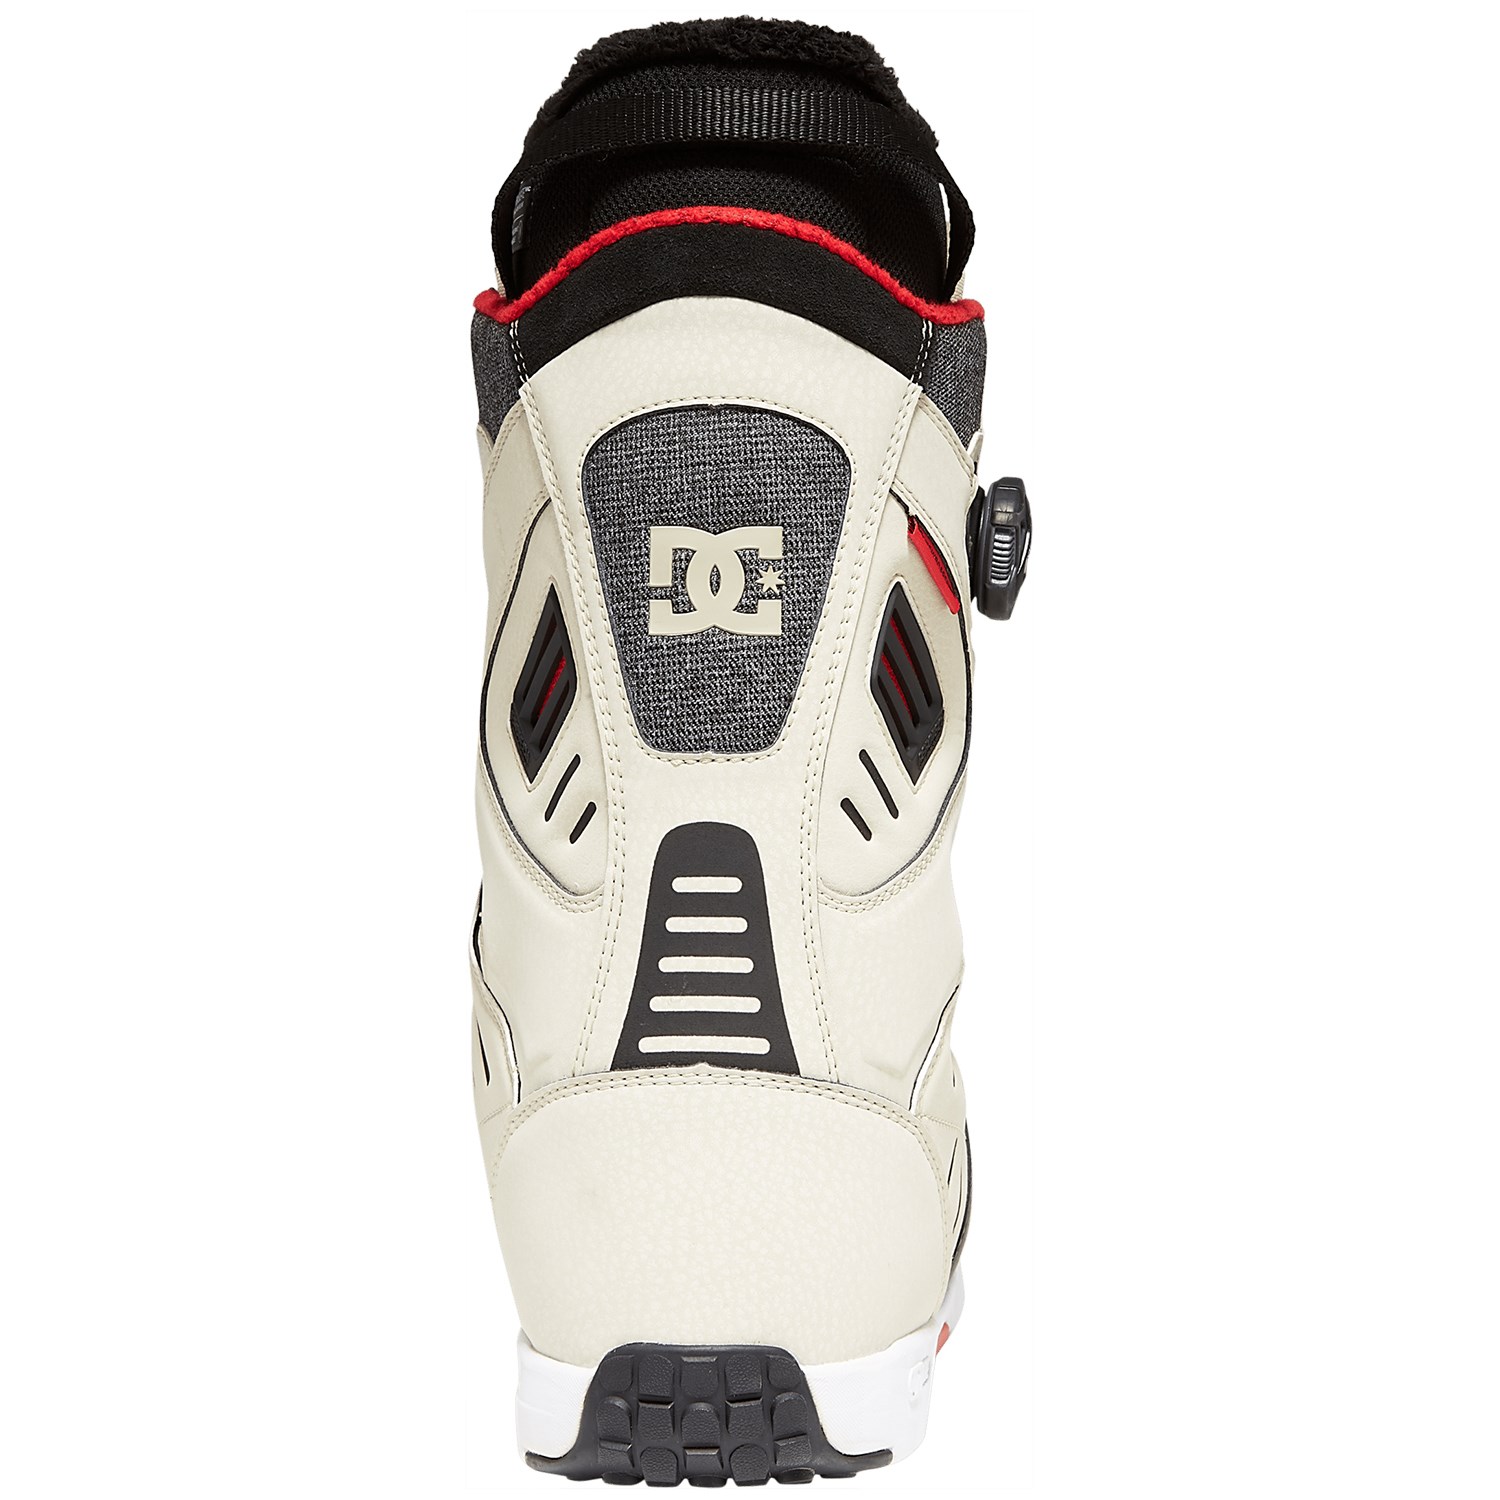 2021 DC Judge Dual BOA Grey Men's Snowboard Boots NEW Size 11 